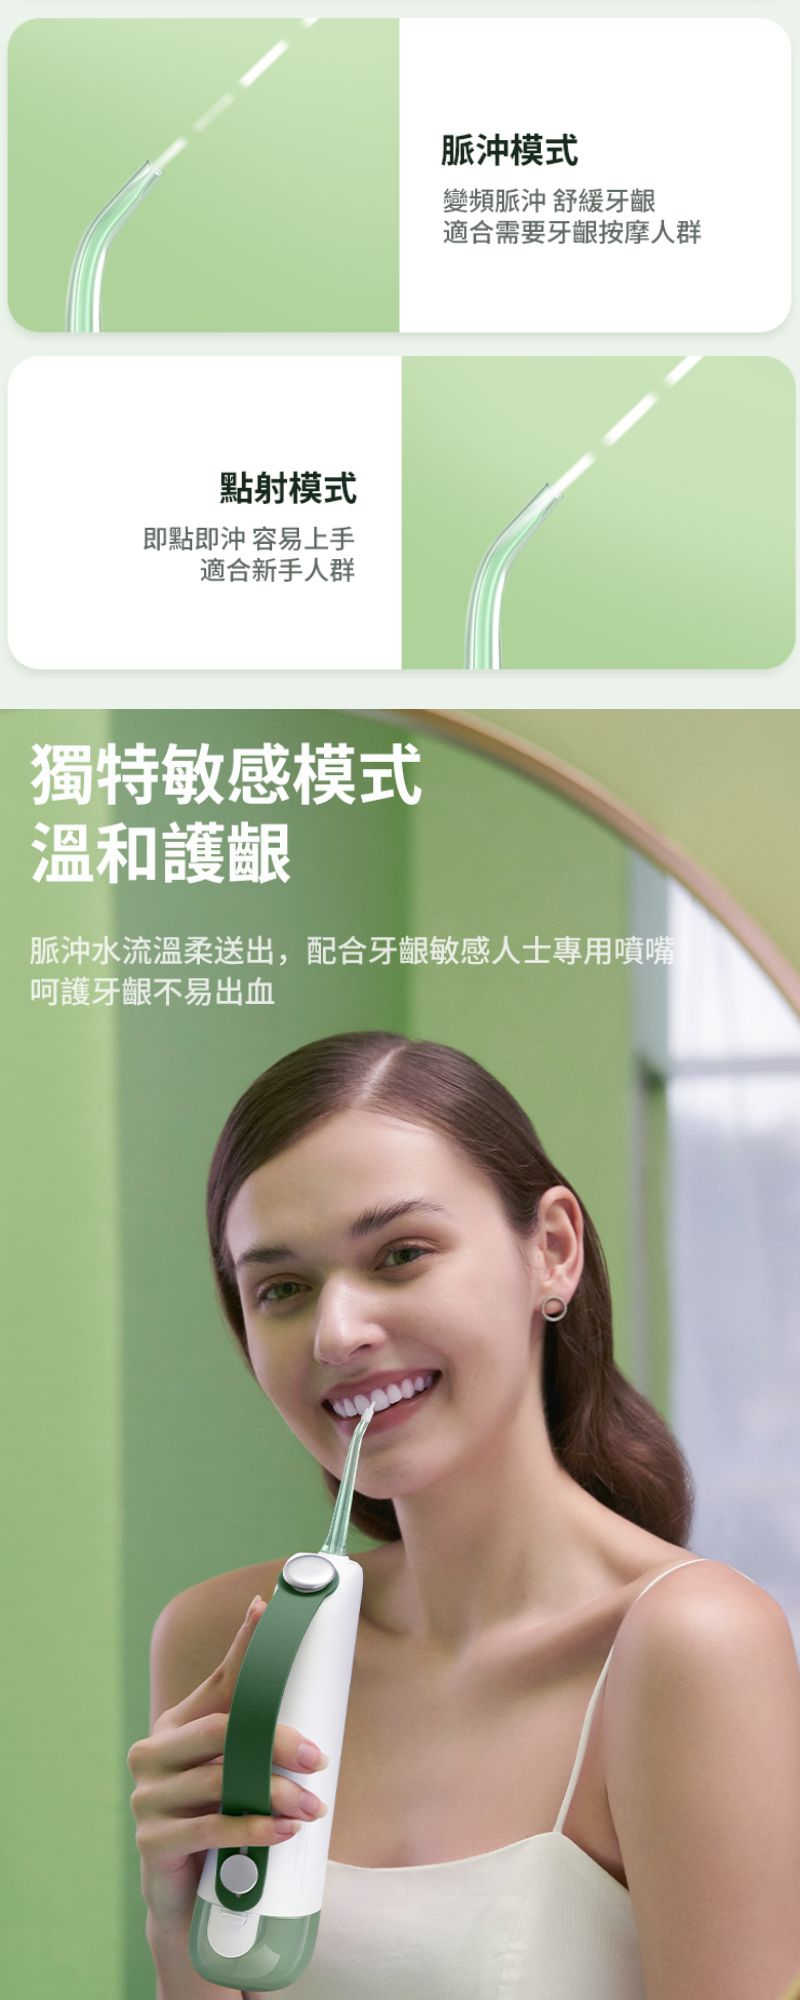 Oclean 歐可林 W10-LG 可攜式電動水牙線機 (綠色)